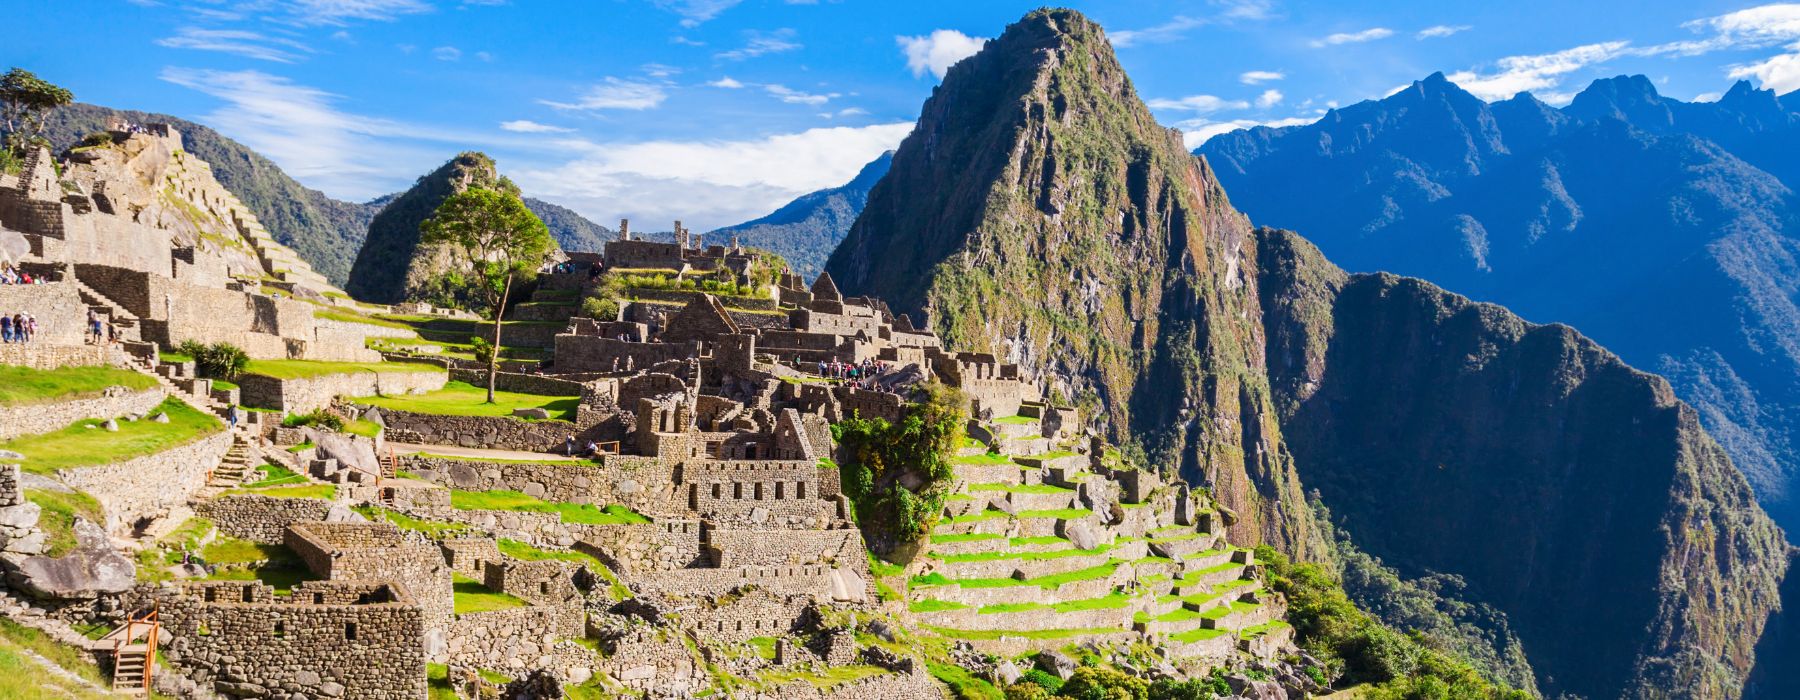 Die Geheimnisse von Machu Picchu enthüllen: Eine umfassende Erkundung